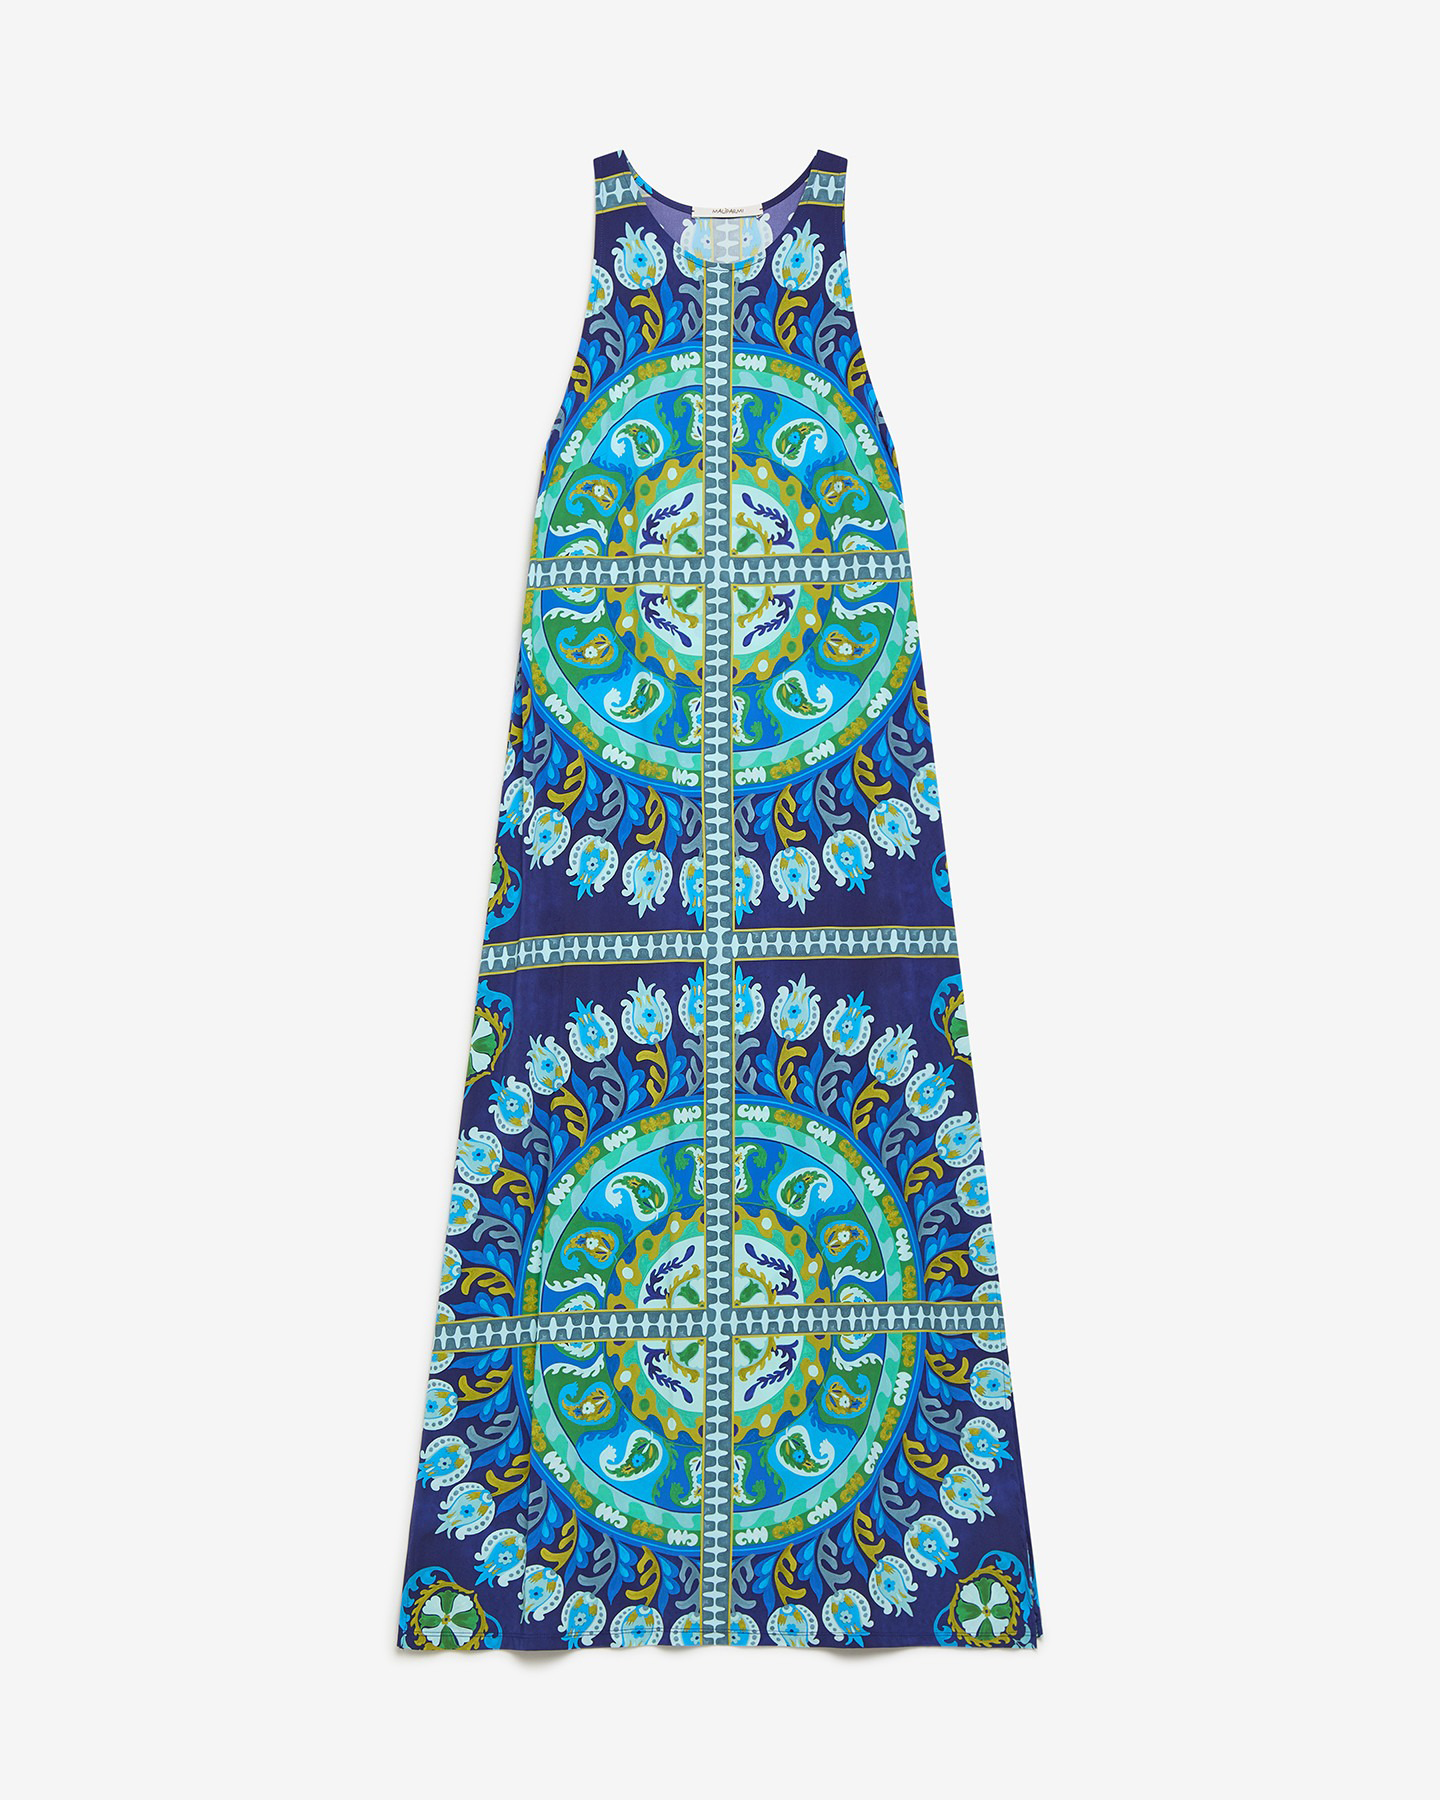 SUZANI CROWN JERSEY DRESS - BLUE